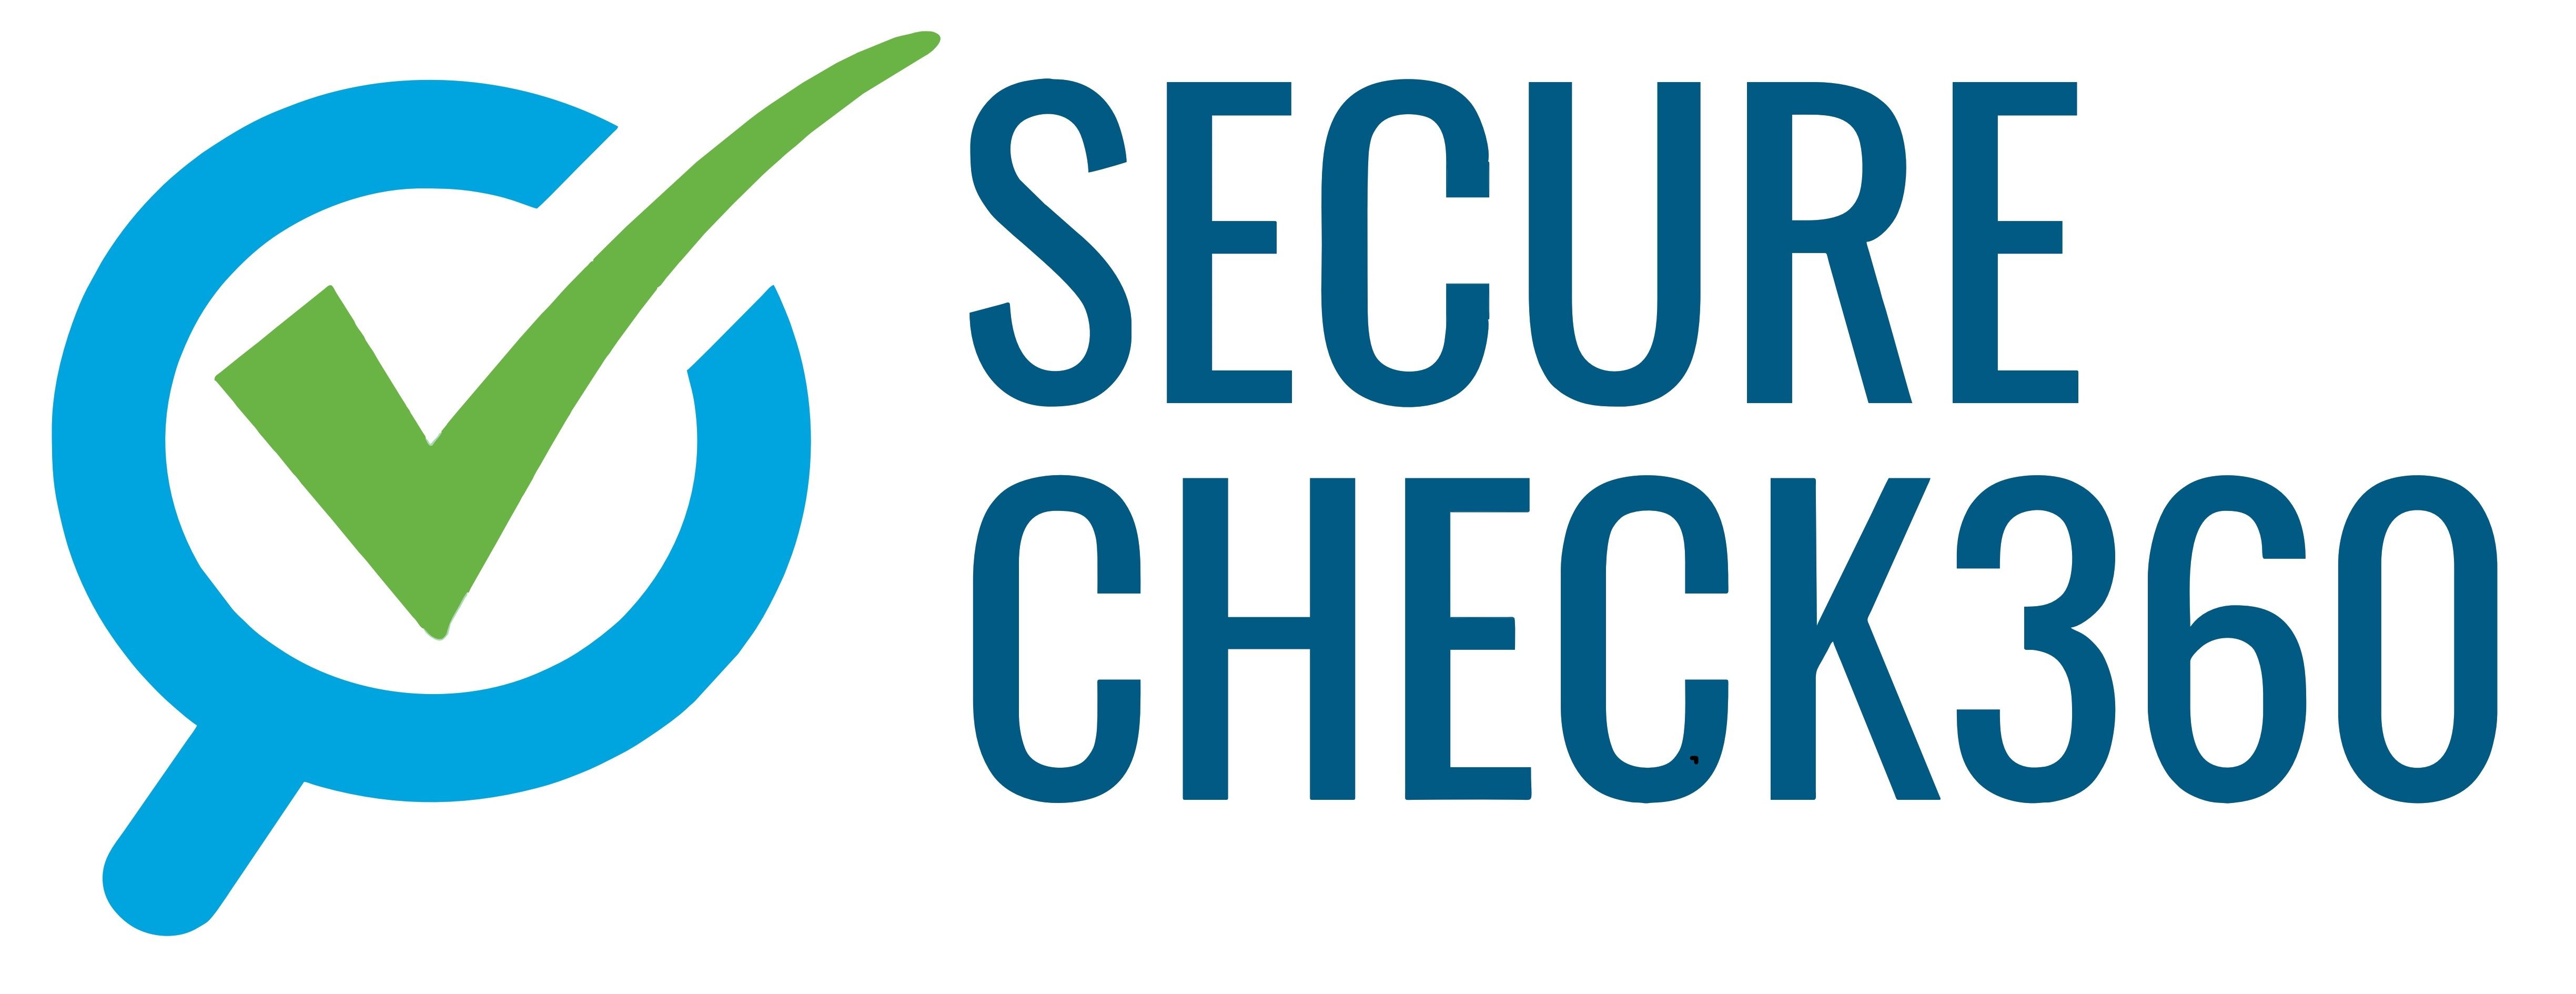 SecureCheck360 - Best employment background screening service